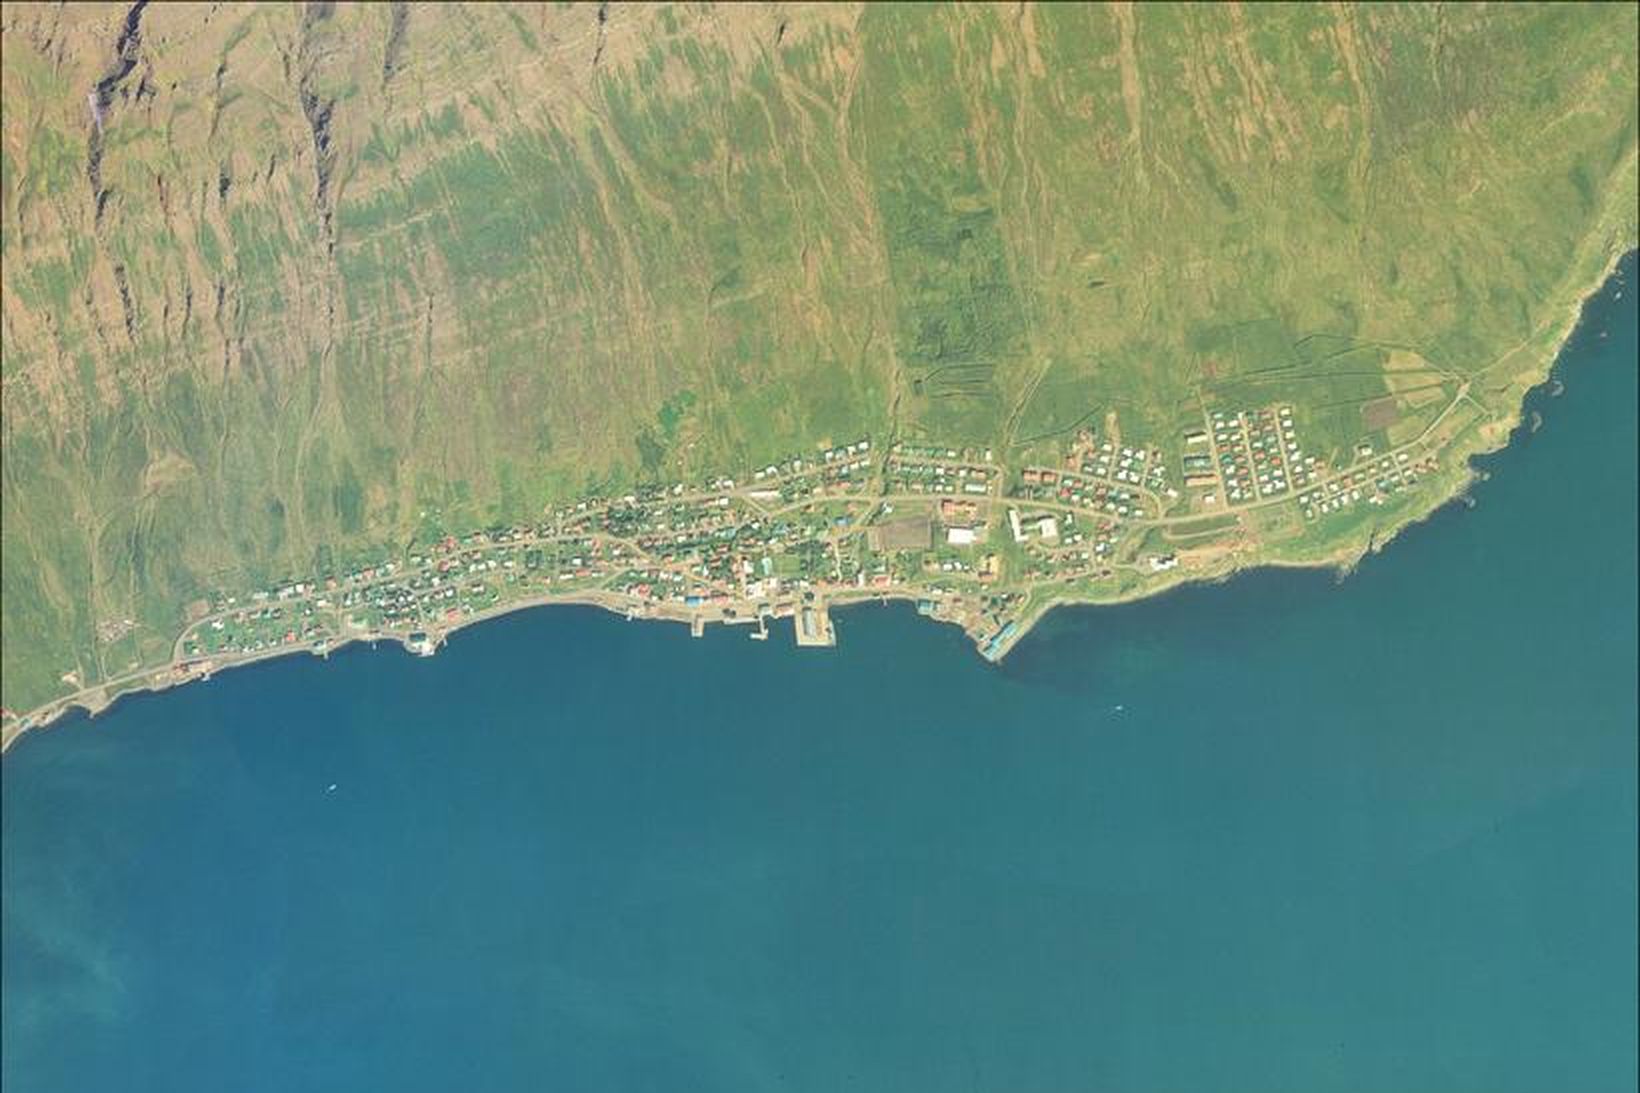 Neskaupsstaður árið 1999